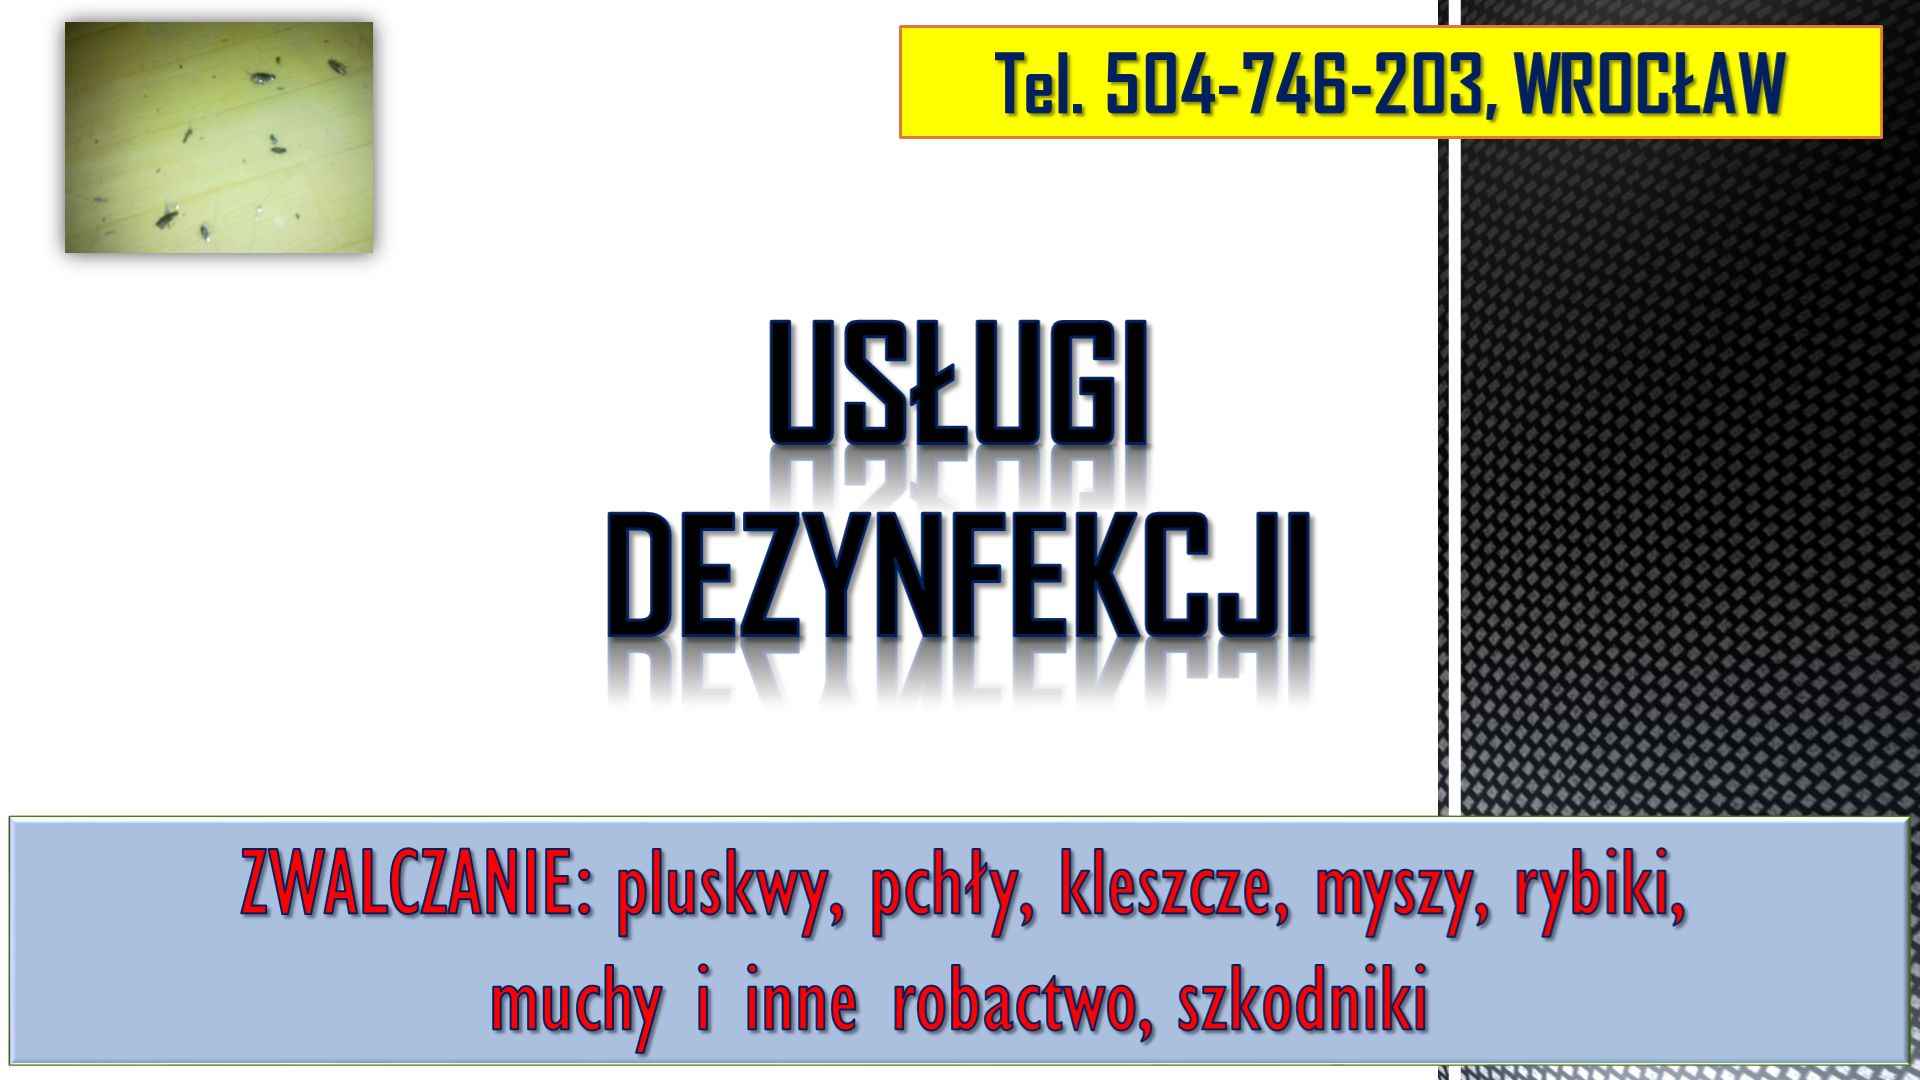 Rybiki zwalczanie, tel 504-746-203, dezynfekcja rybików, Wrocław. cena Psie Pole - zdjęcie 4